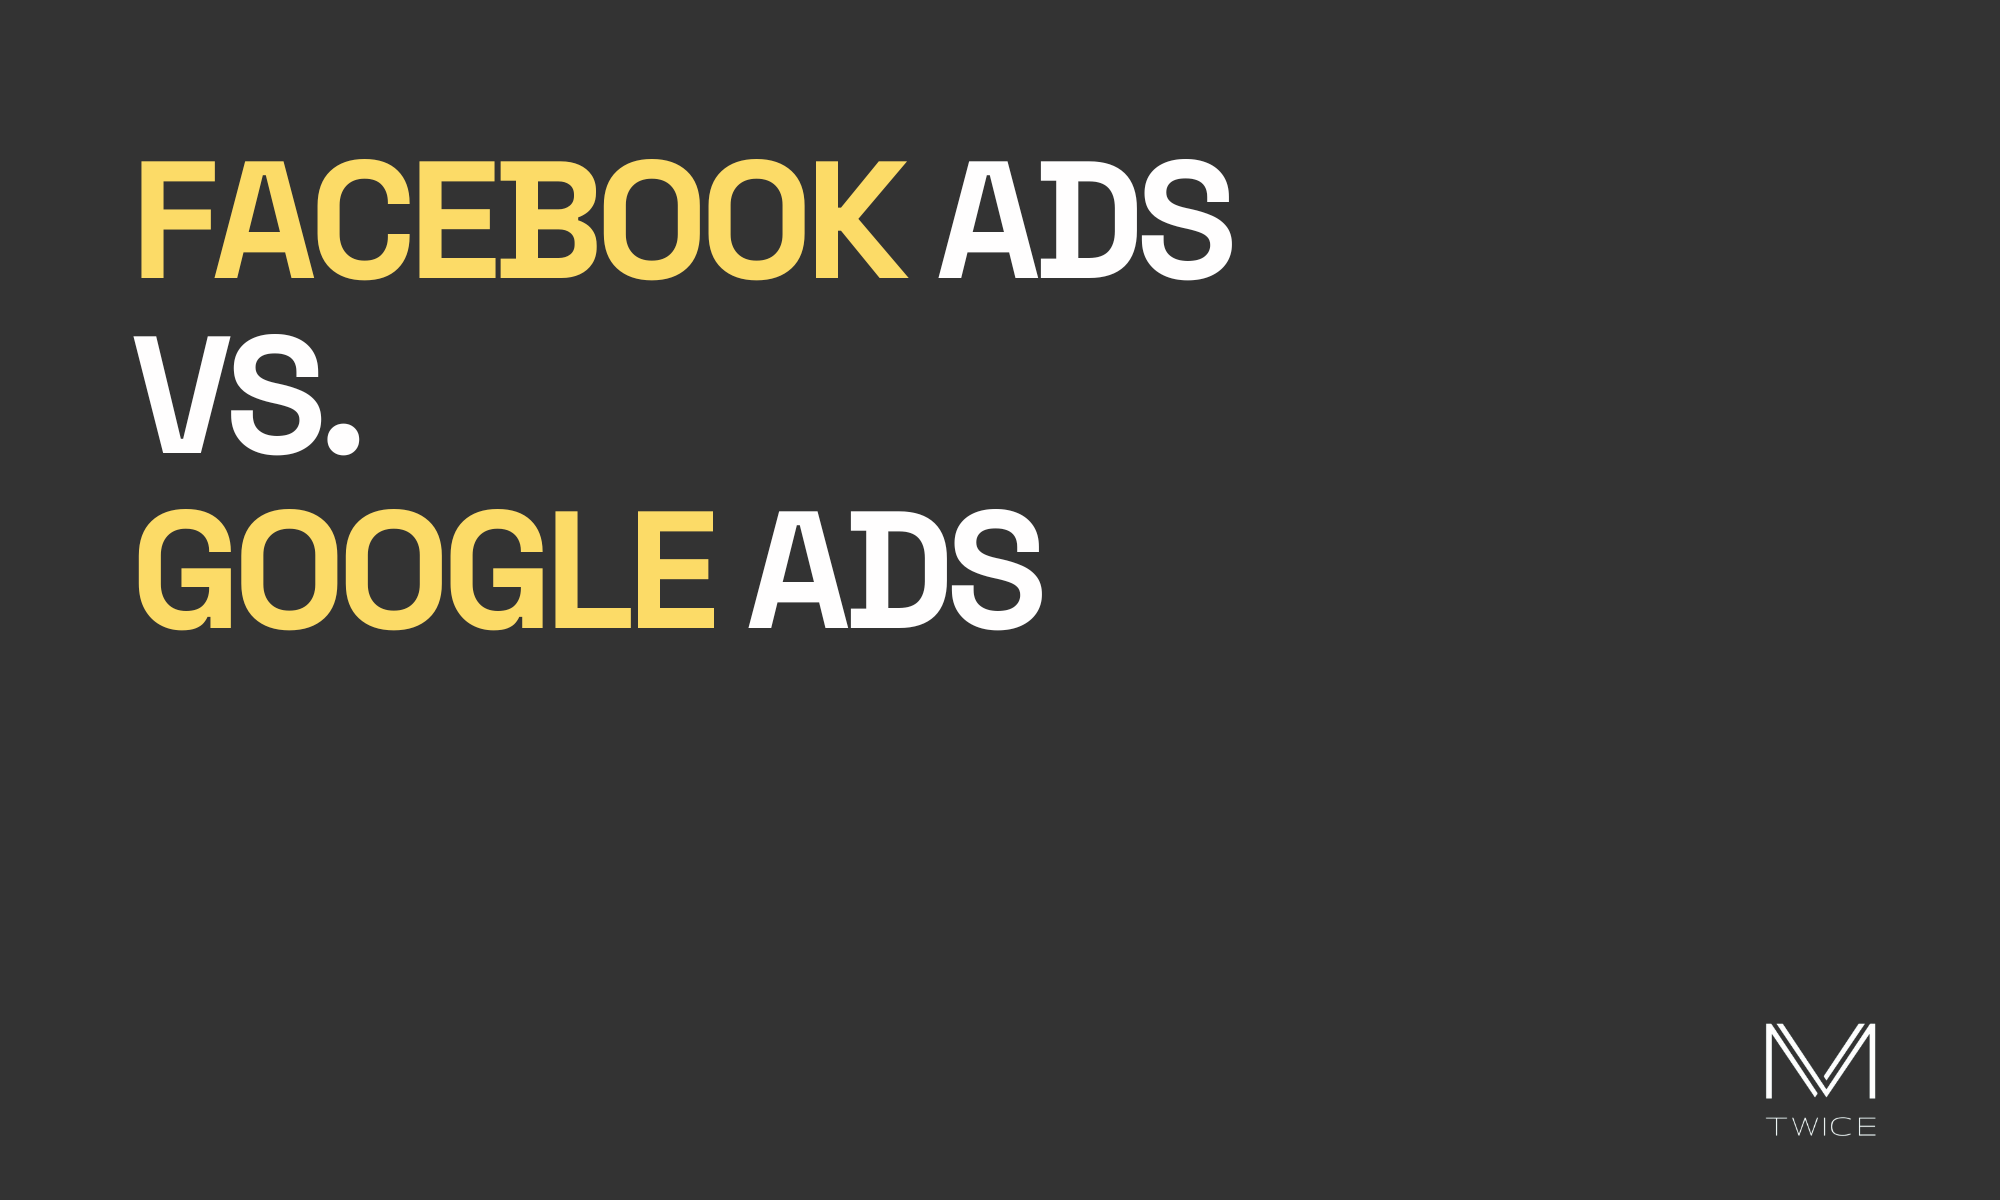 Image de couverture sur fond noir et lettres blanches de l'article de blog 'Facebook ads vs Google ads' avec le logo de M-TWICE en bas à droite.